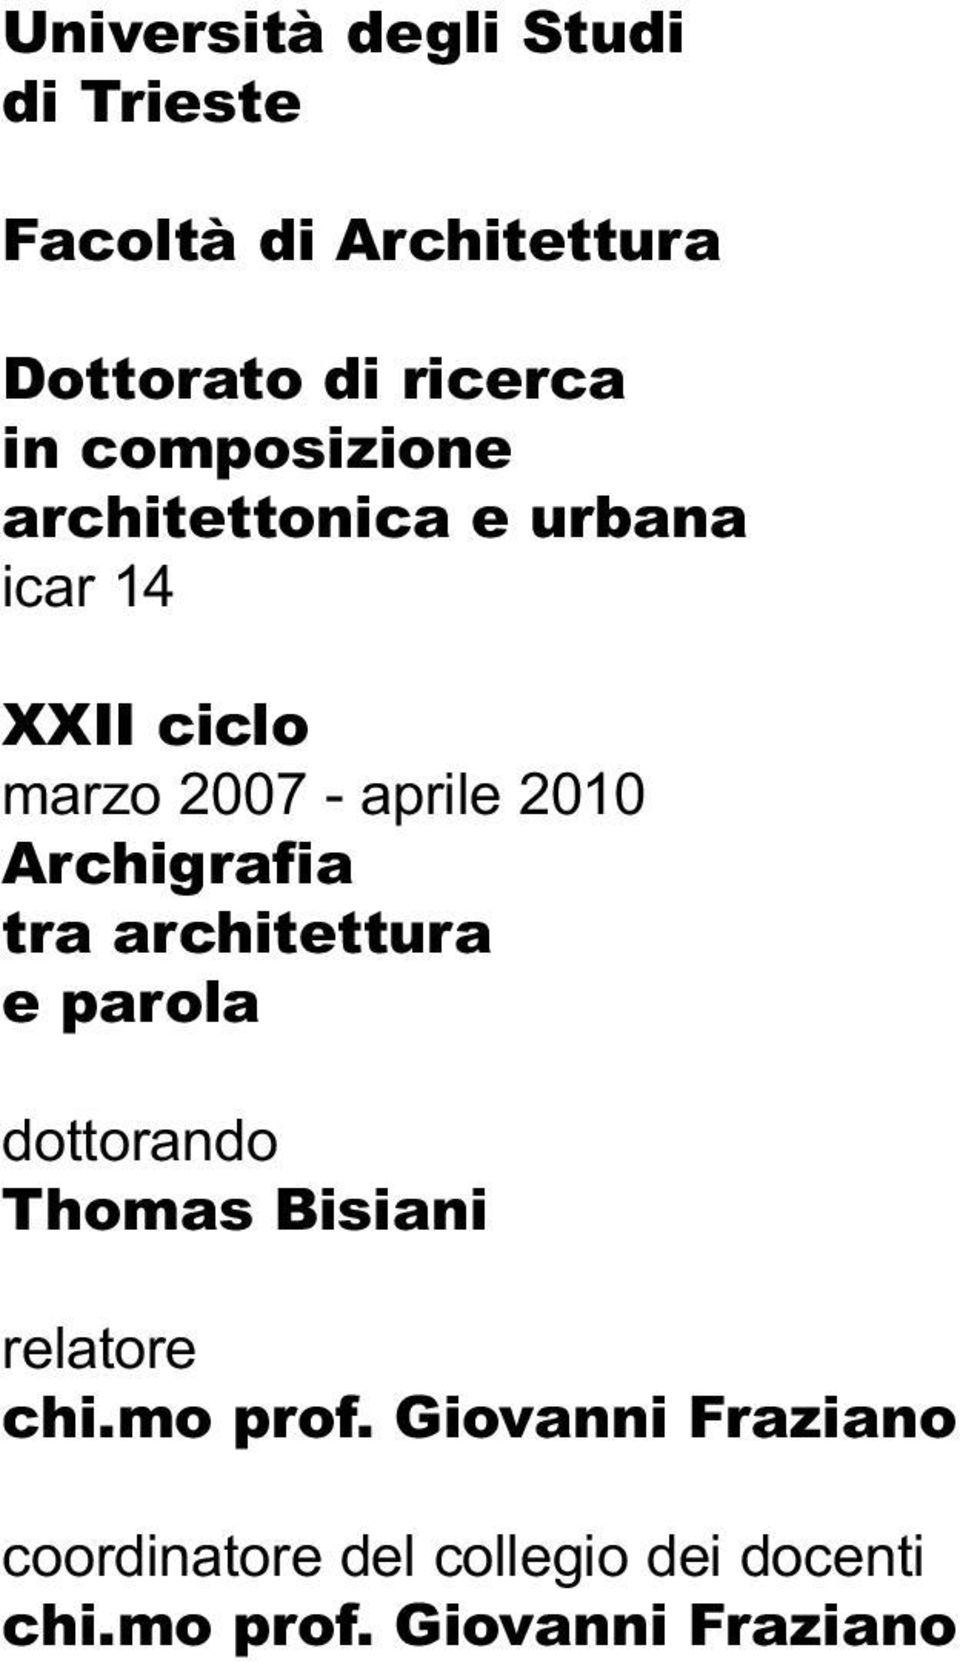 Archigrafia tra architettura e parola dottorando Thomas Bisiani relatore chi.